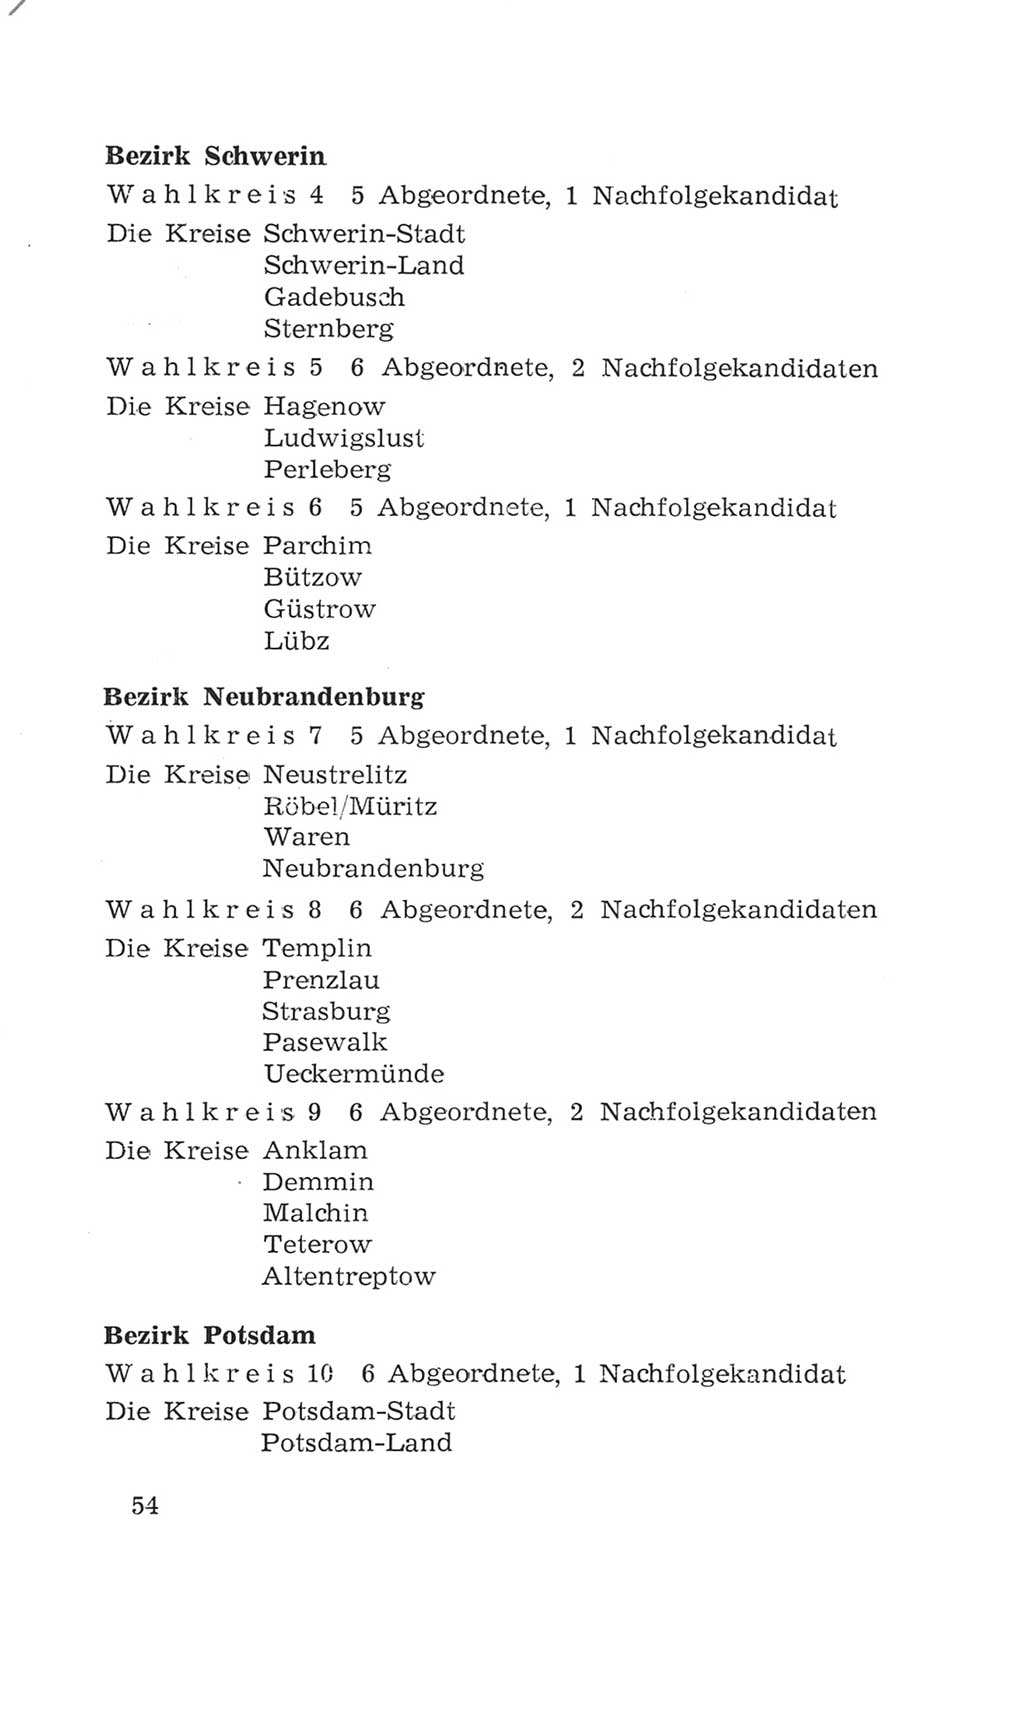 Volkskammer (VK) der Deutschen Demokratischen Republik (DDR), 4. Wahlperiode 1963-1967, Seite 54 (VK. DDR 4. WP. 1963-1967, S. 54)